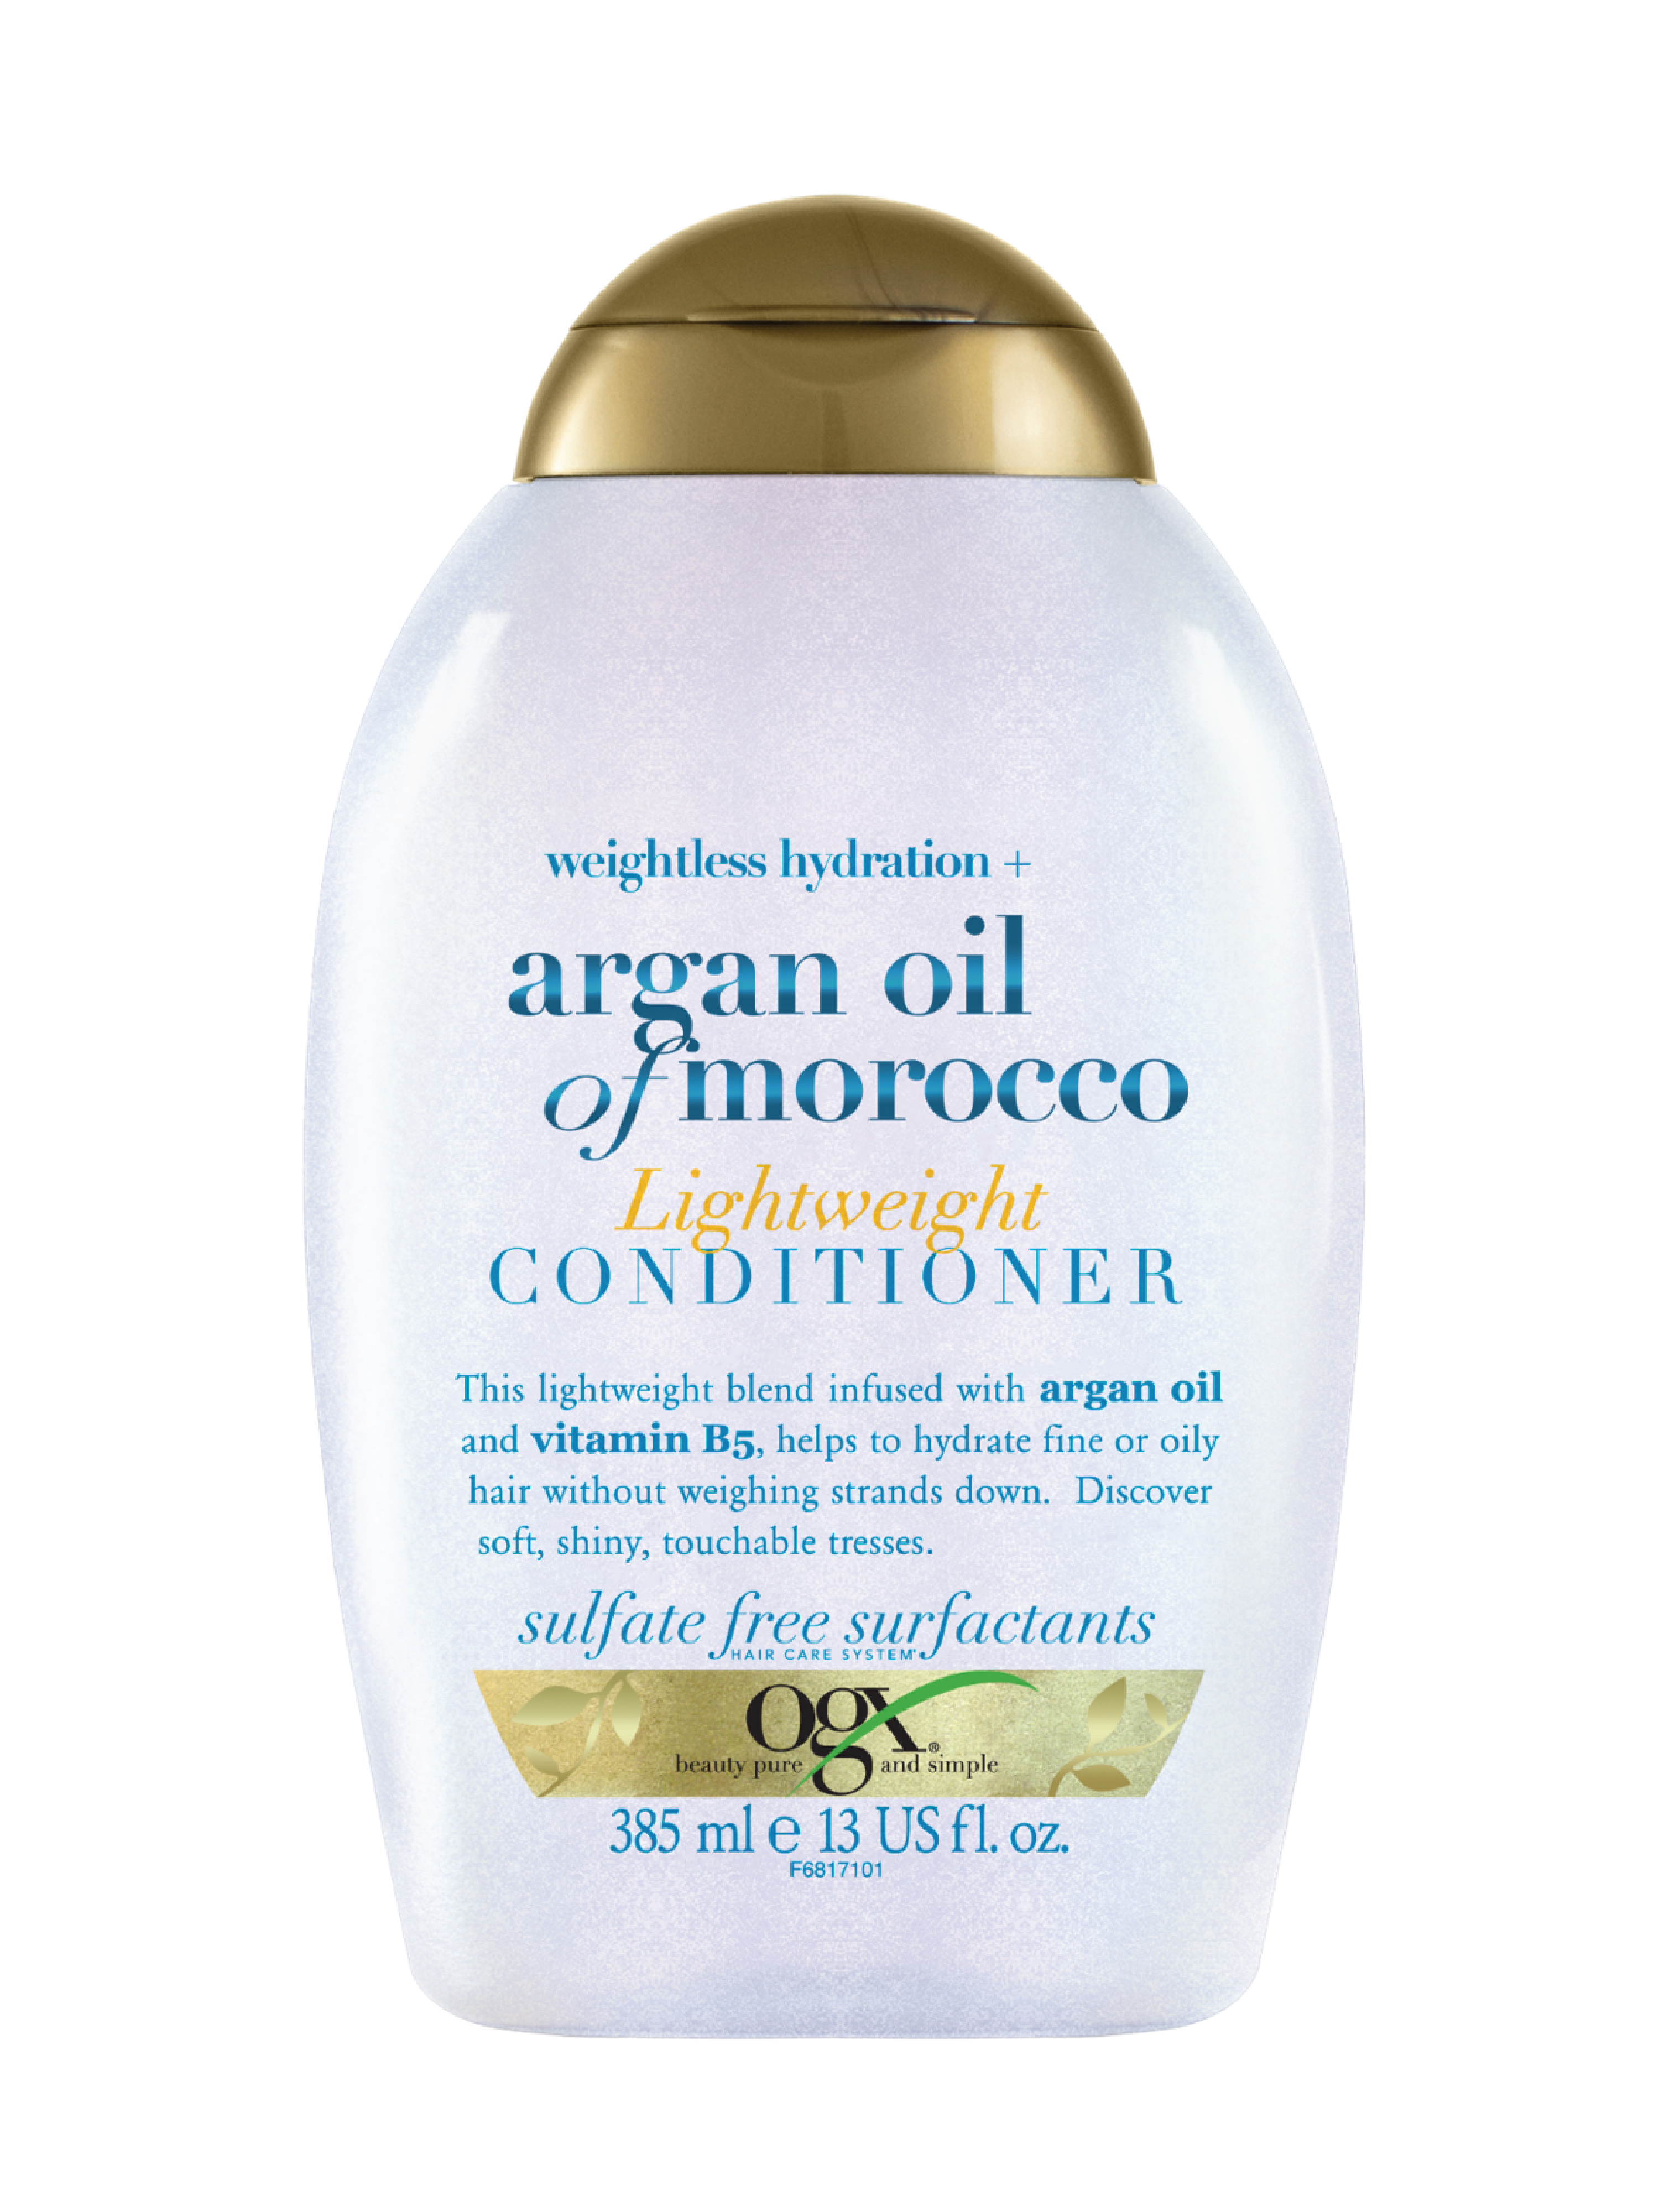 Ogx Moroccan Argan Oil Lightweight Conditioner, 385 ml